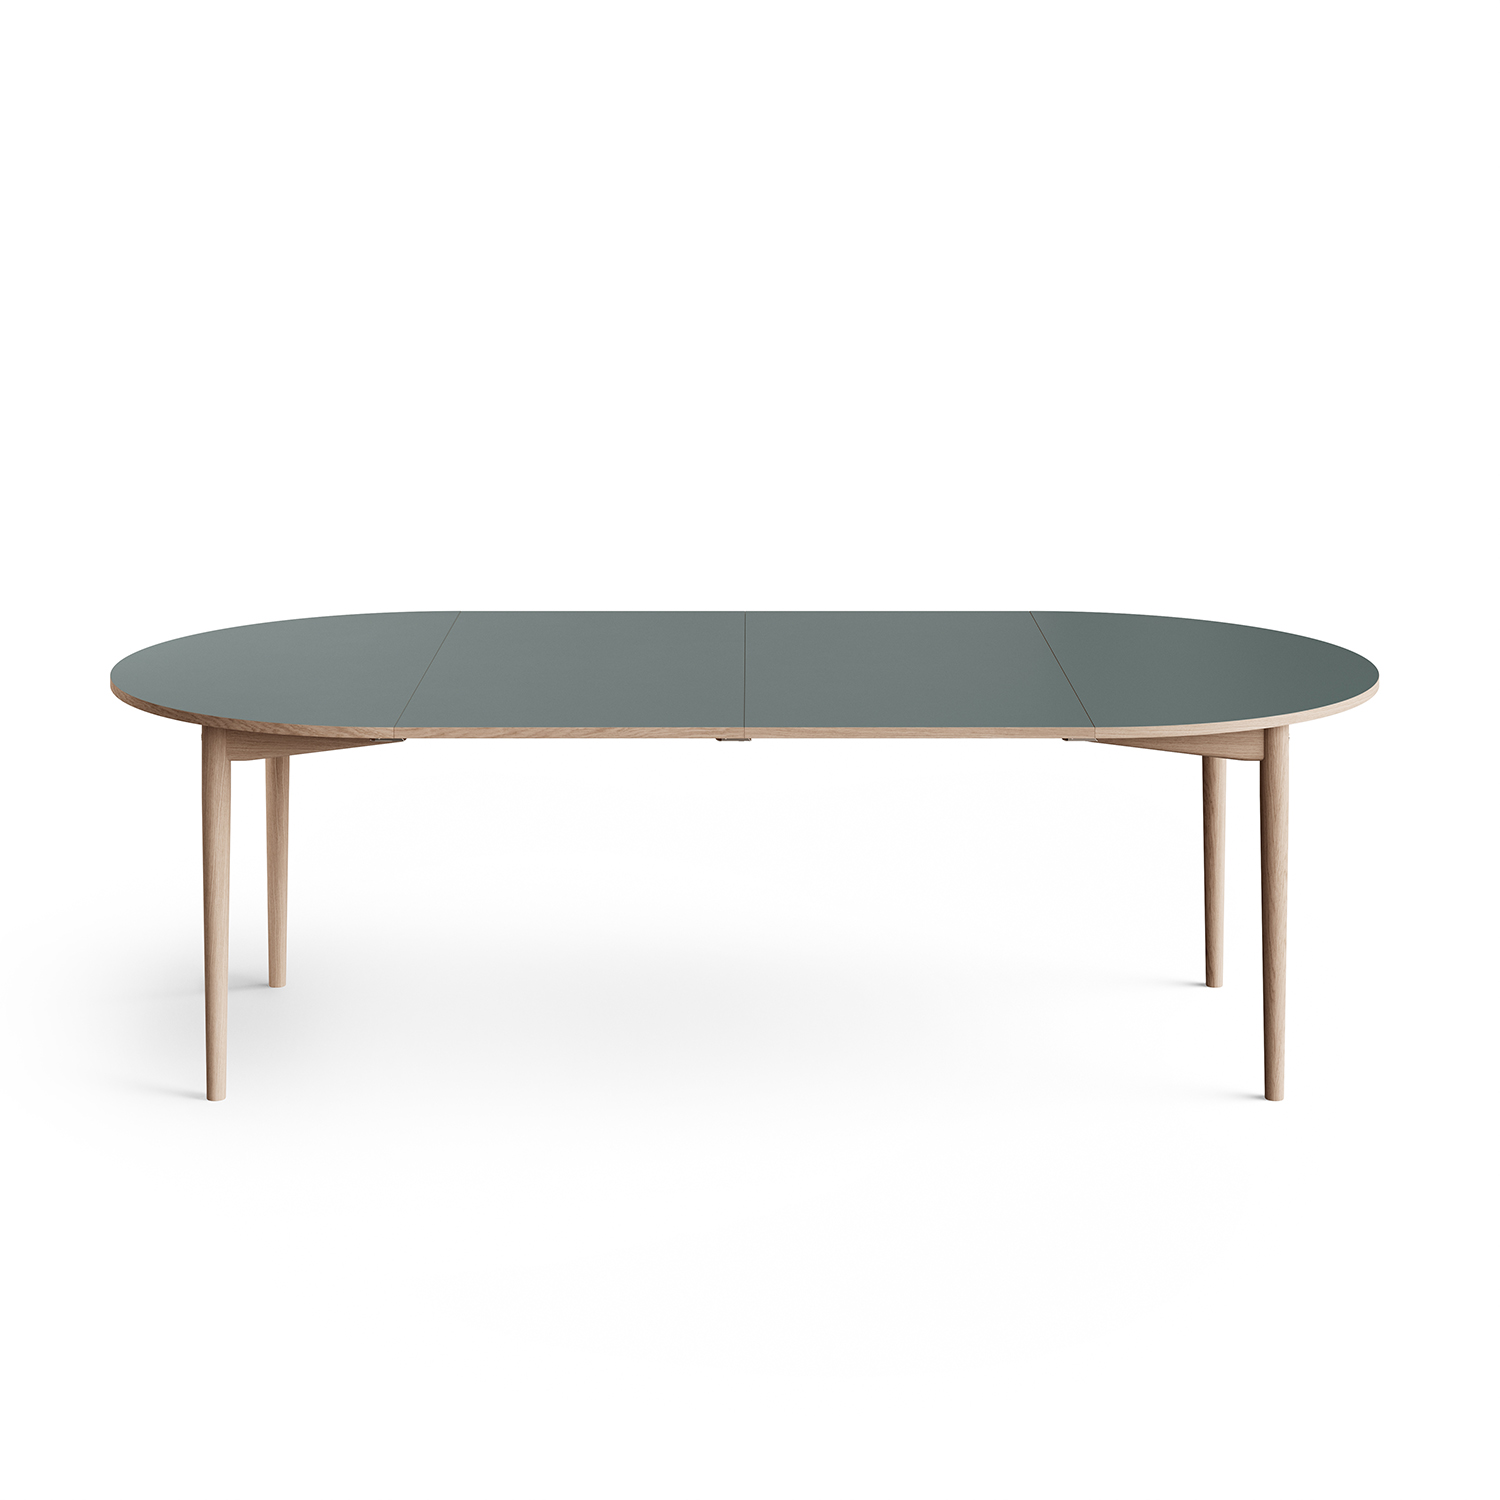 Eikund - Oma dining table extendable